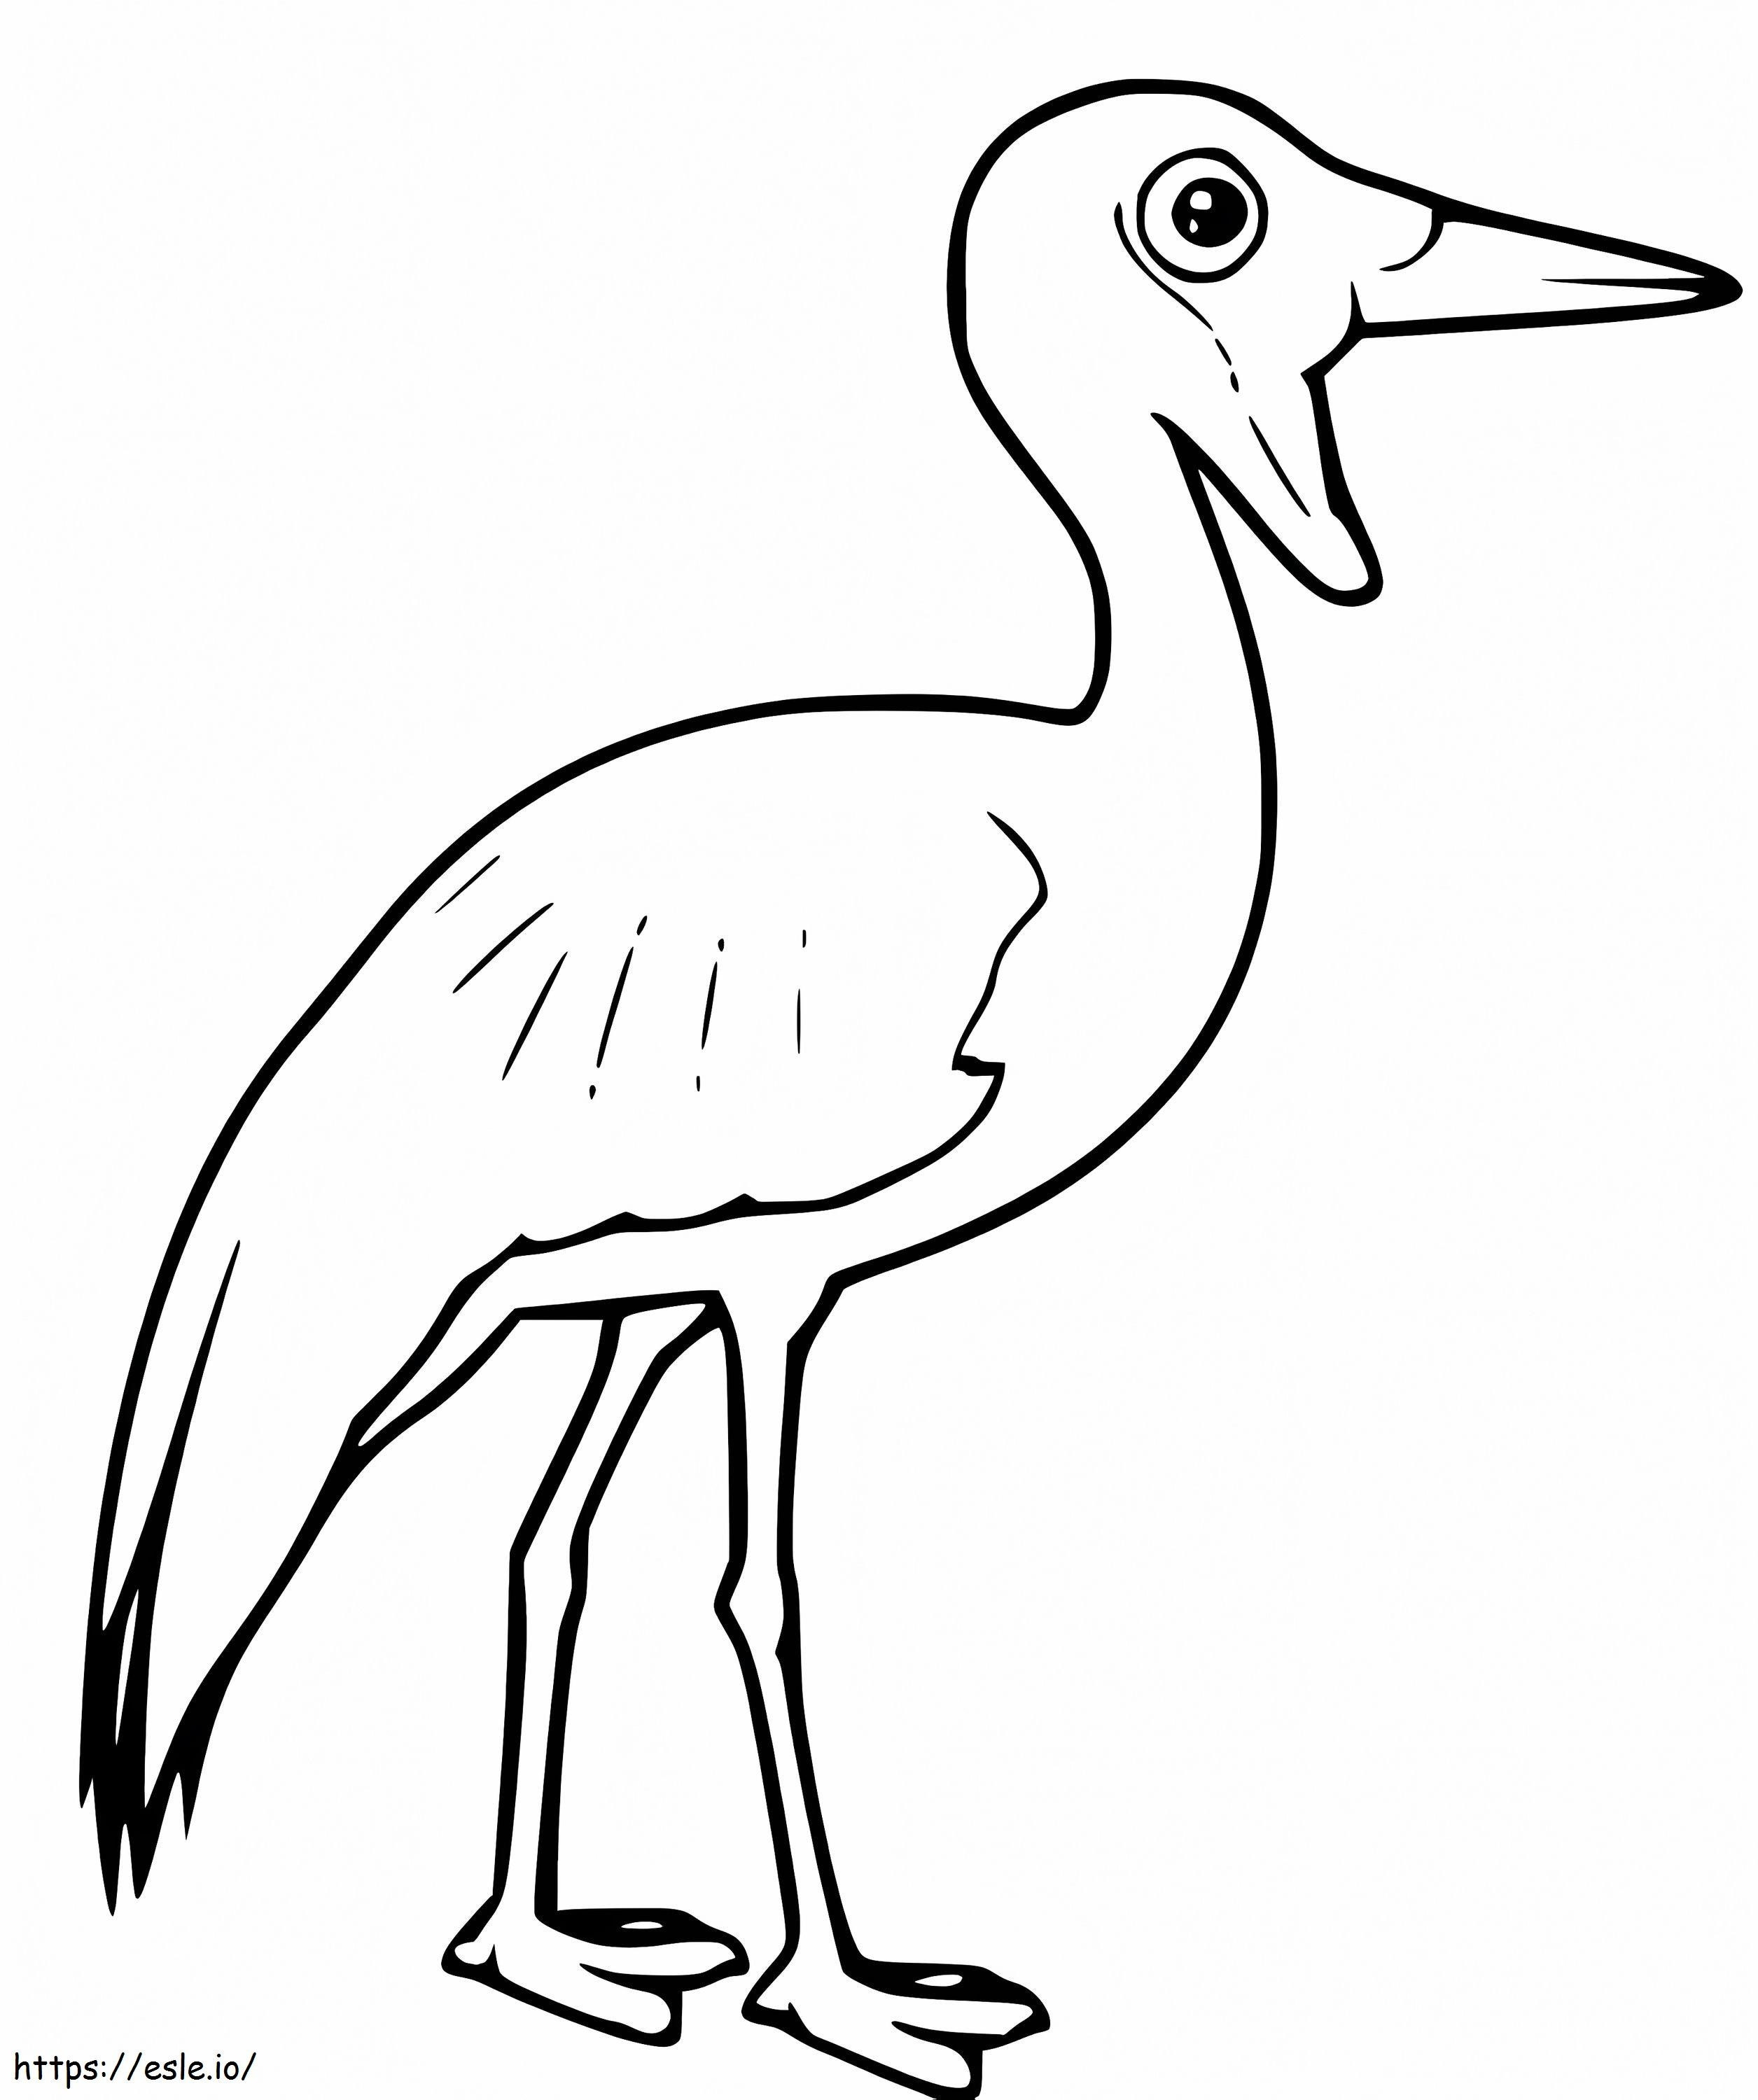 Lelkraanvogel kleurplaat kleurplaat